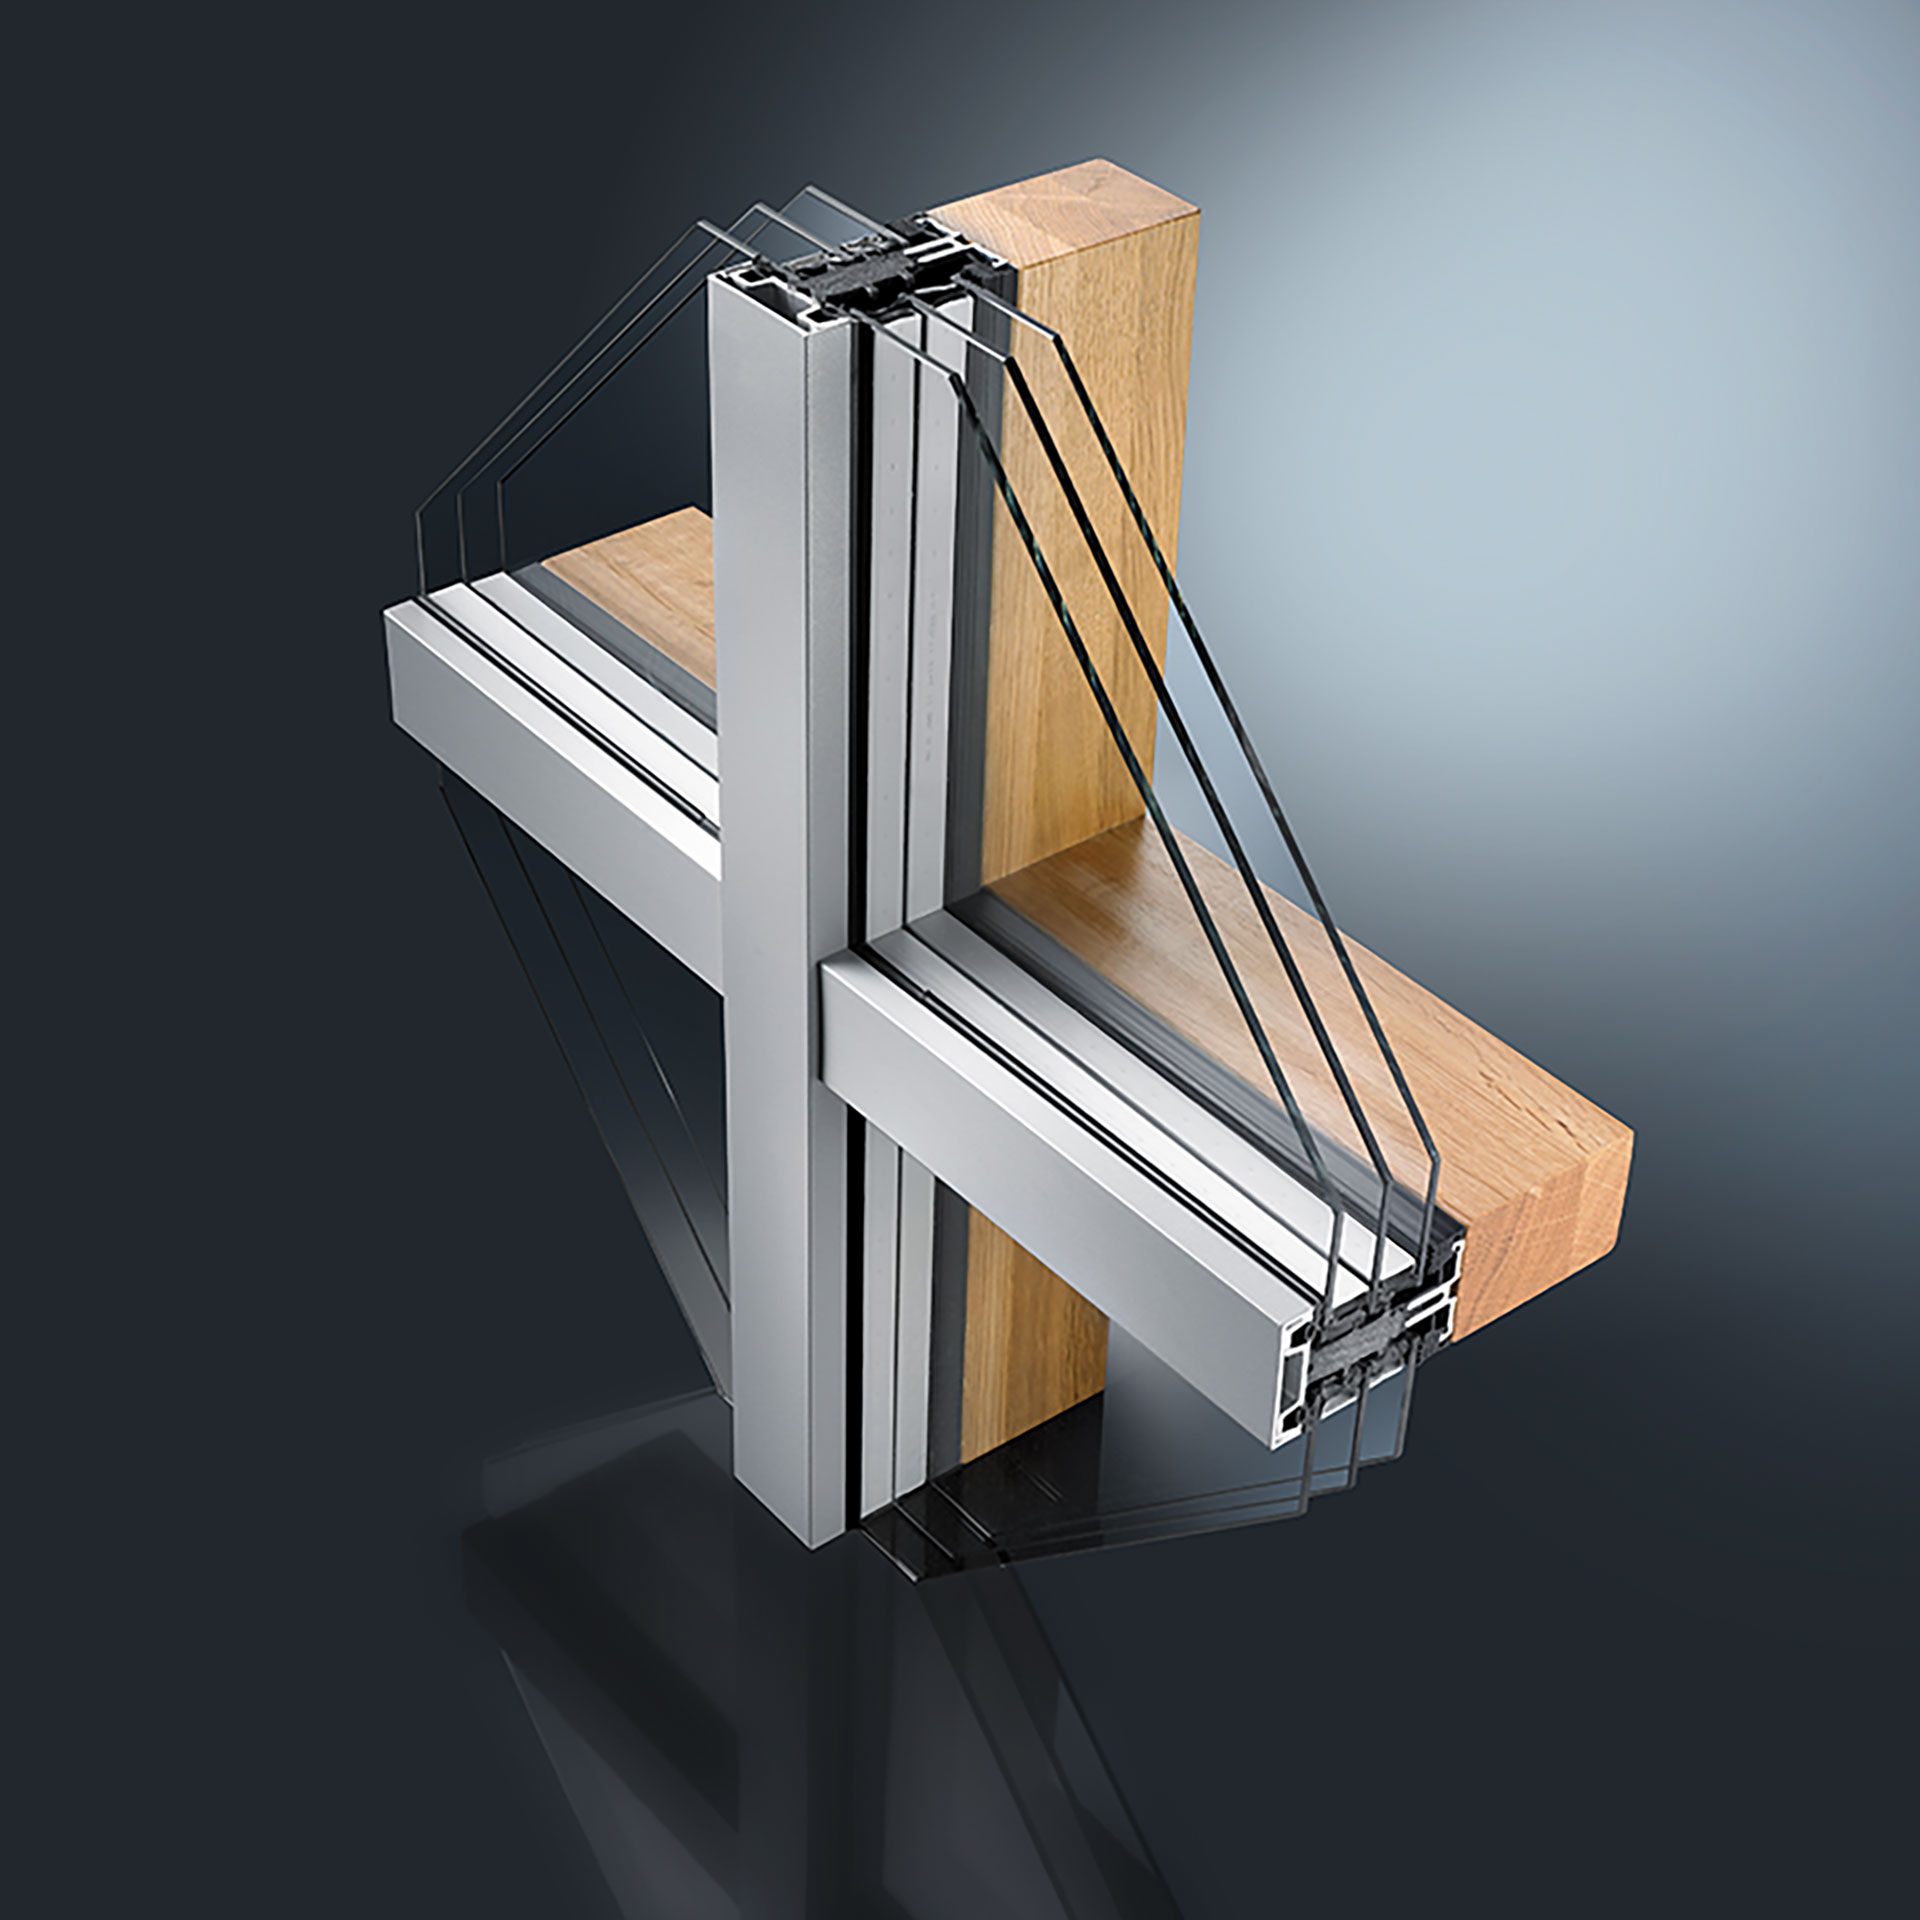 Kombiniert mit dem Fenstersystem GUTMANN MIRA therm 08 ist das Pfosten-Riegel-Fassadensystem LARA GF durch Einbau eines hochwärmedämmenden Isolators für den Passivhaus-Fassadenbau geeignet. Auf Wunsch ist das System auch in Baubronze erhältlich.